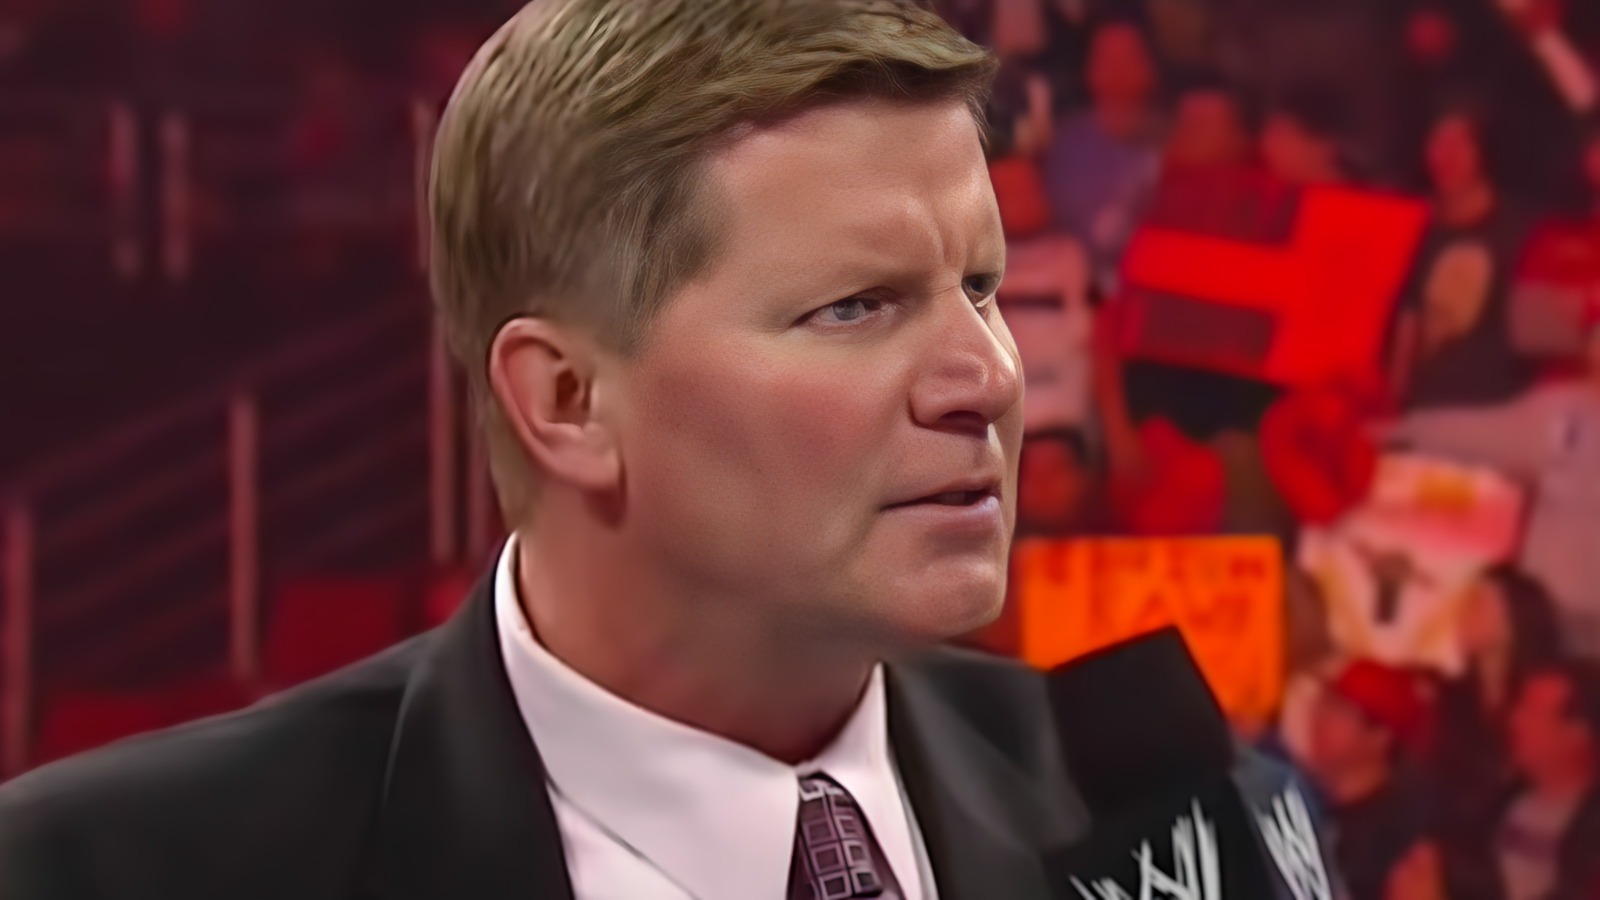 Reacción entre bastidores a la demanda de la WWE y los comentarios de John Laurinaitis